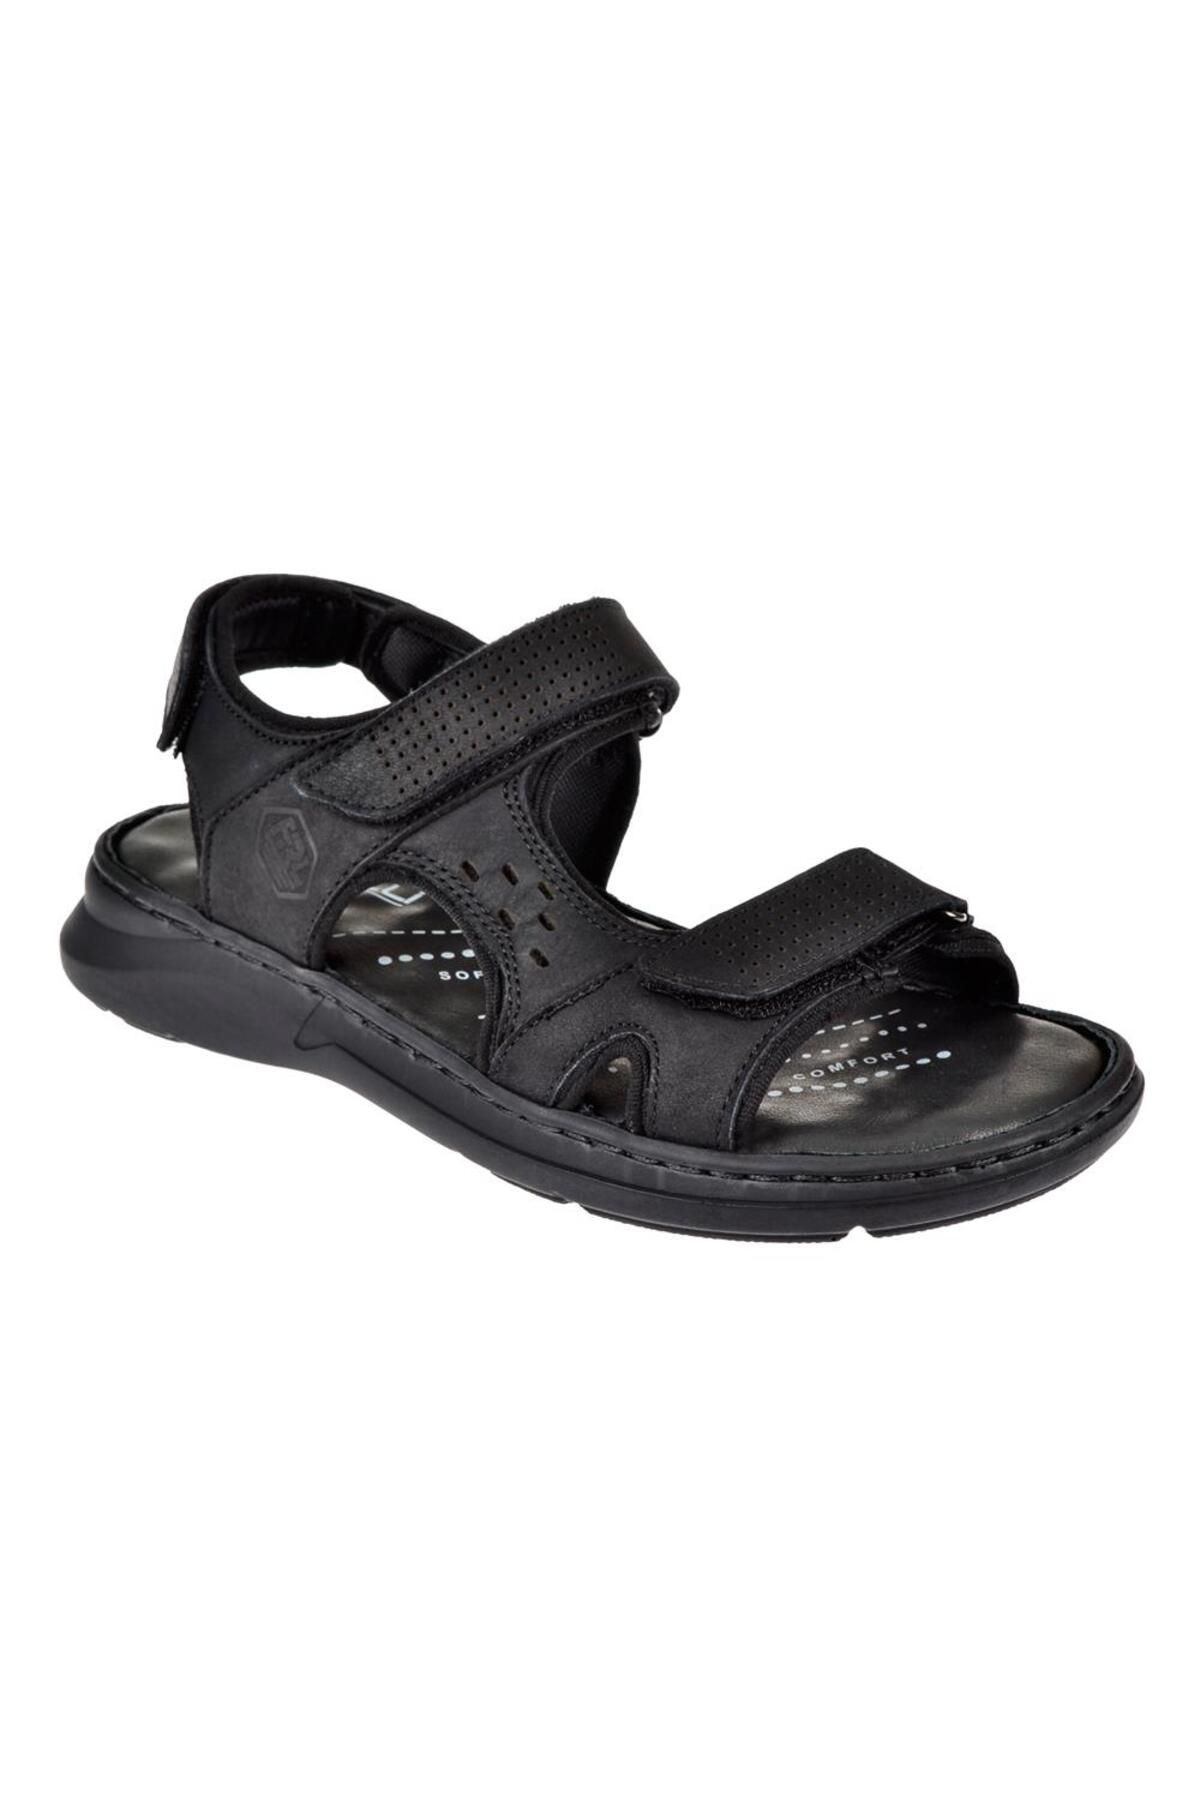 Forelli Hakiki Deri Comfort Cırtlı Erkek Sandalet For-40526 Siyah Nubuk